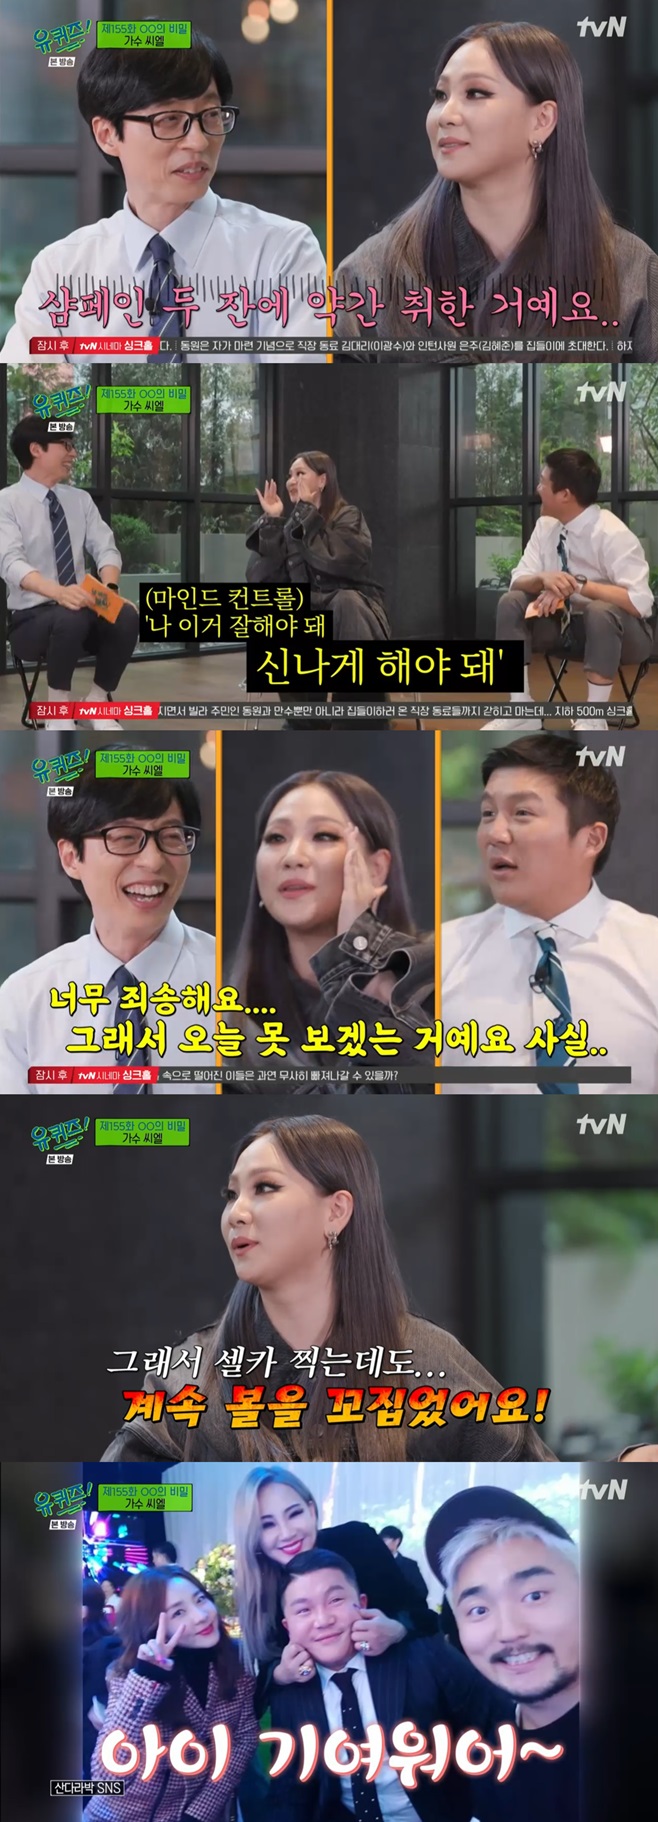 tvN 유 퀴즈 온 더 블럭, 씨엘